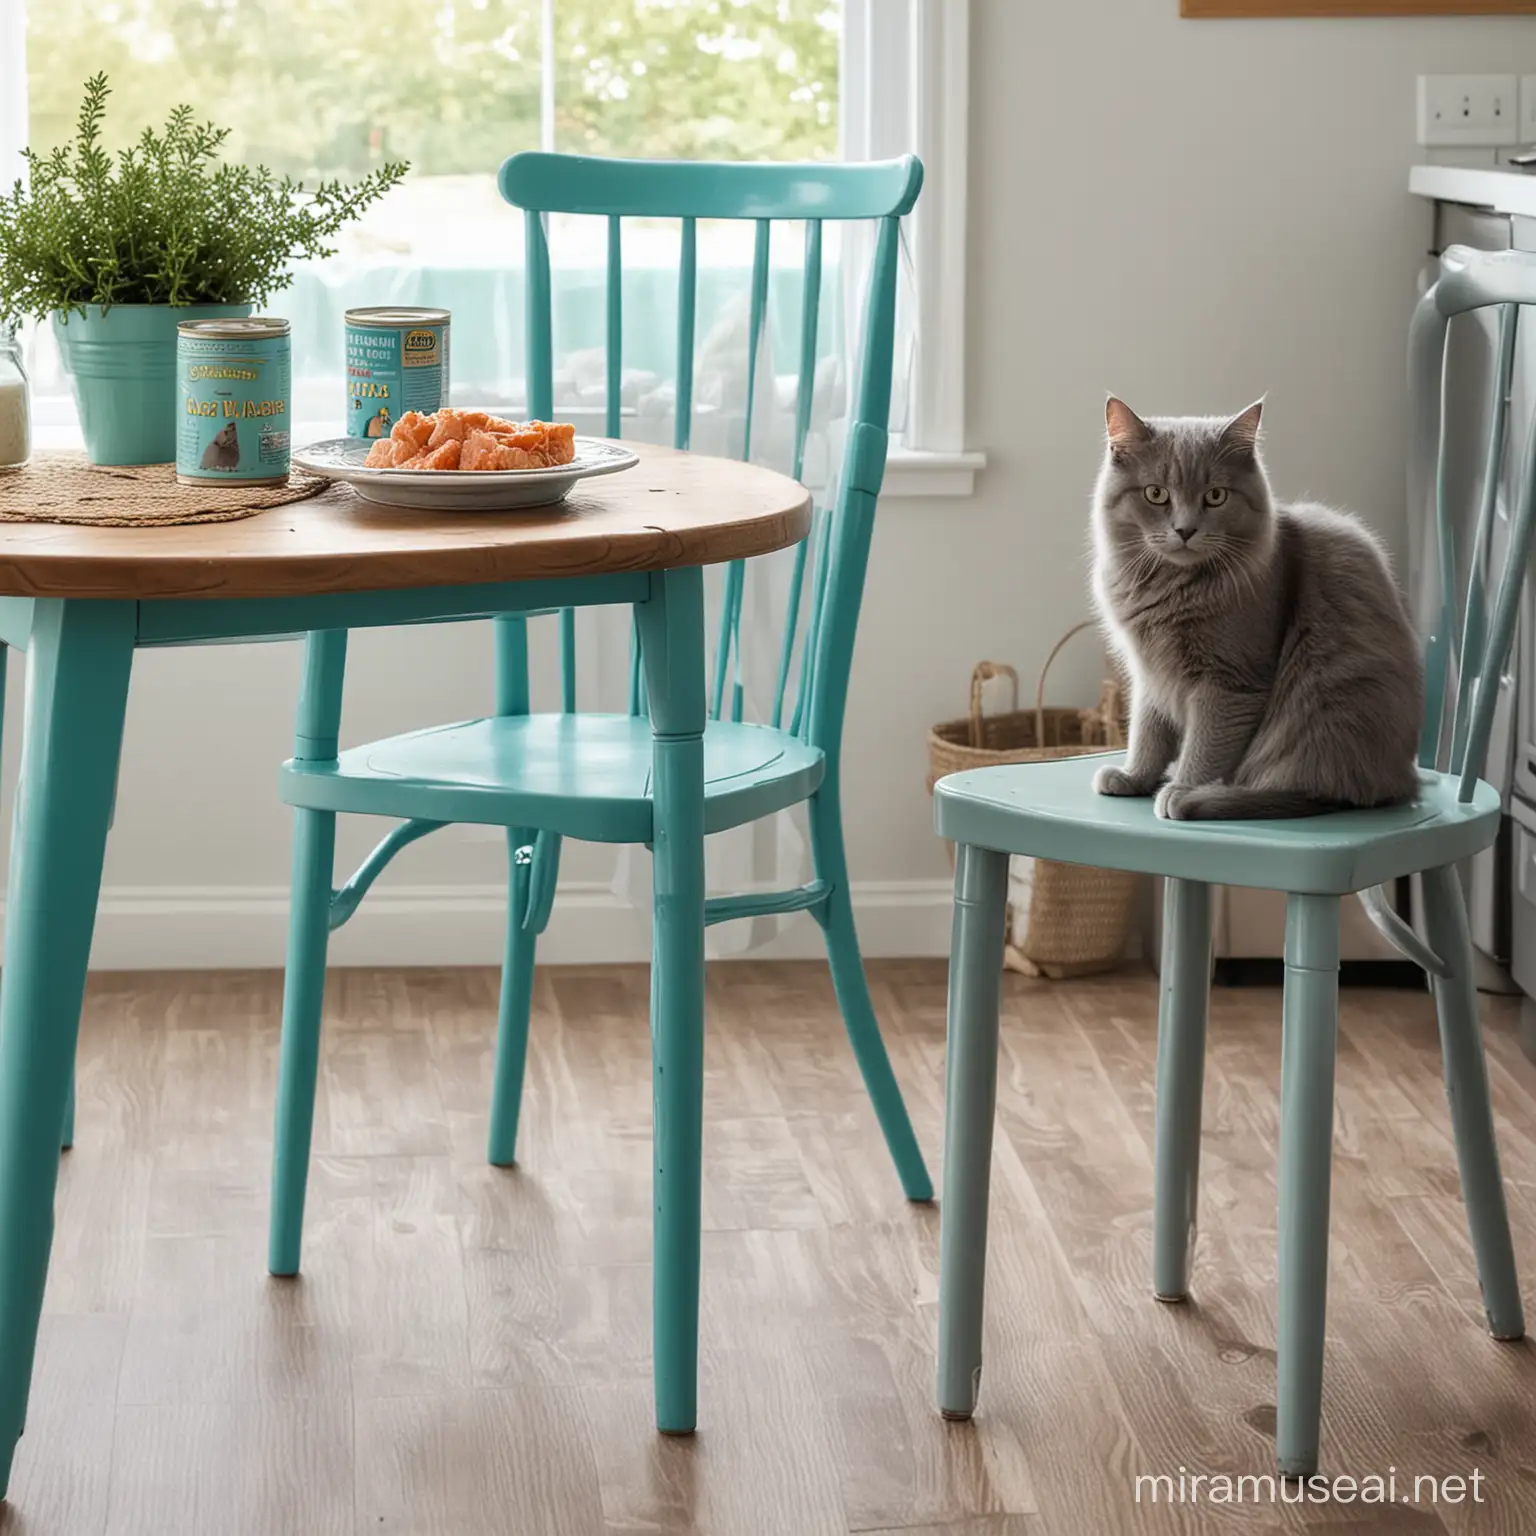 Кухонный стол бирюзового цвета. На столе стоит банка с рыбными консервами.  На стуле рядом со столом сидит пушистый серый кот